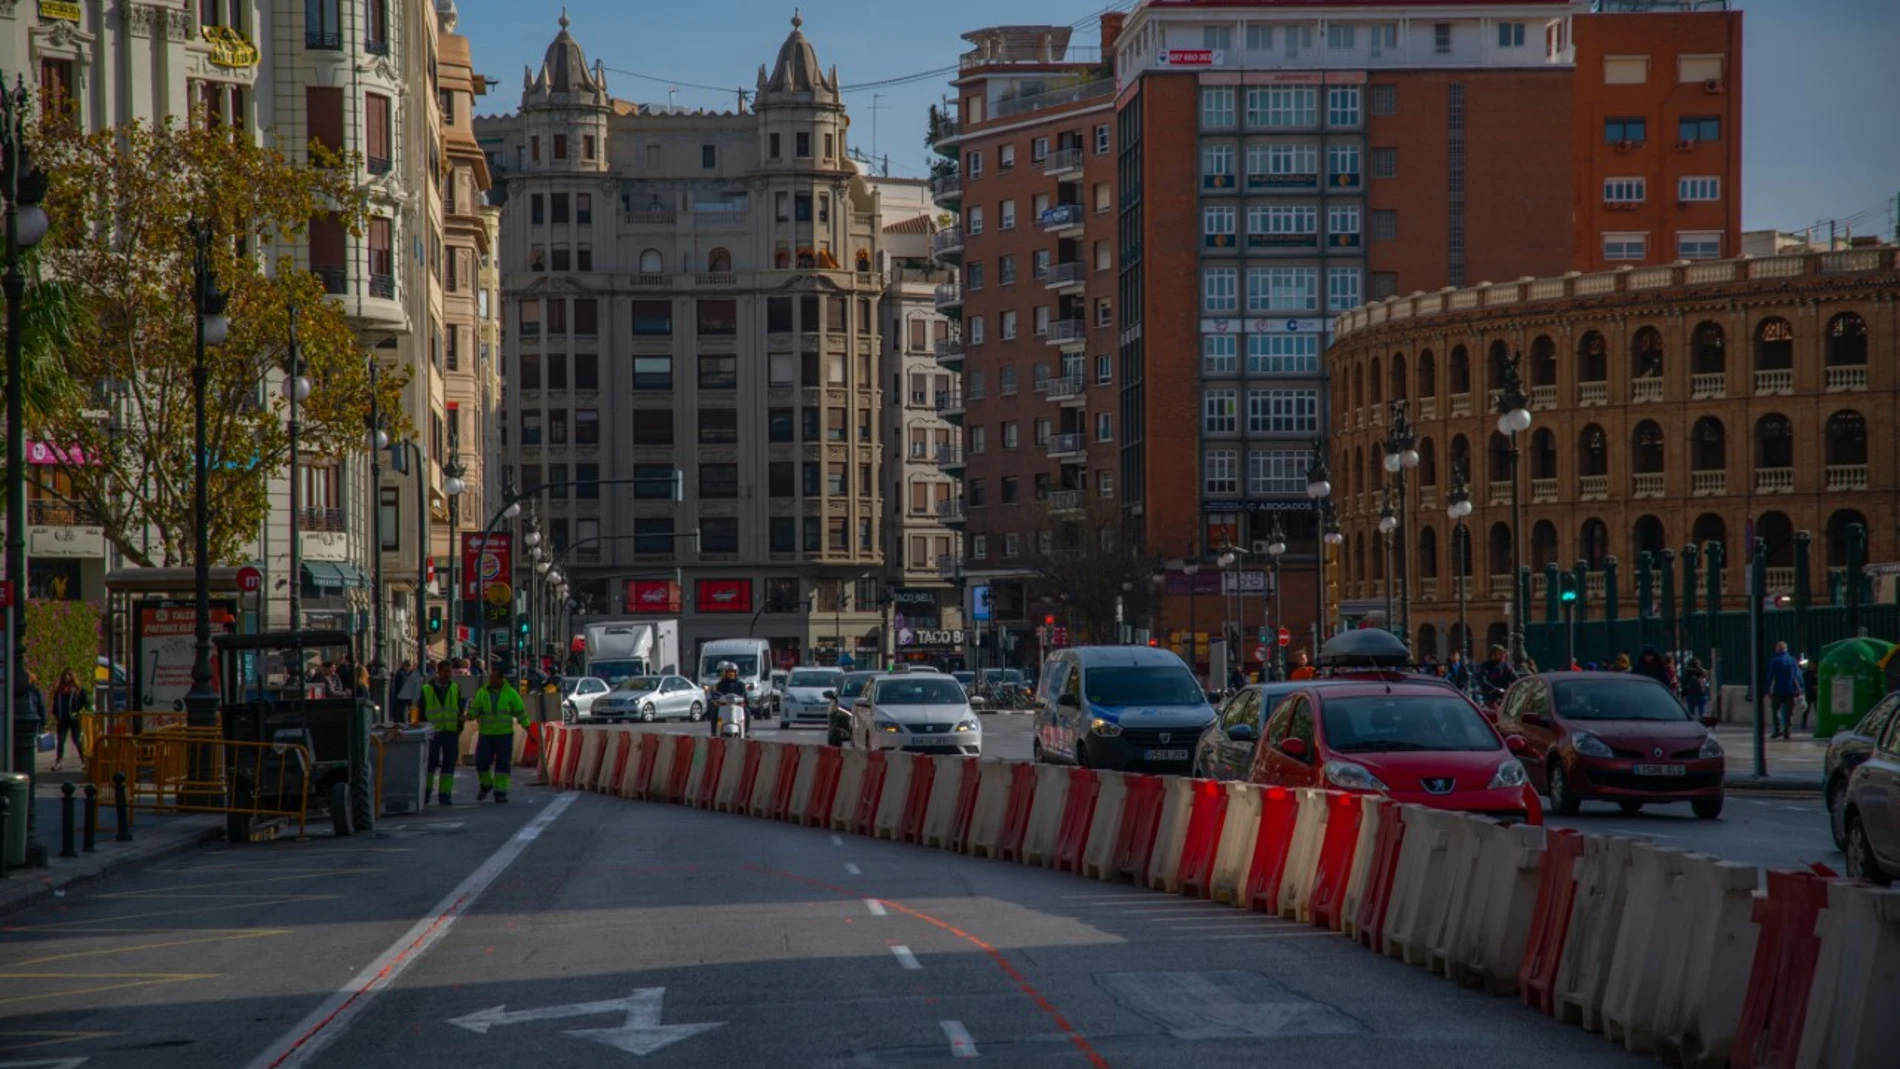 Los primeros trabajos para la futura peatonalización de la plaza del Ayuntamiento de Valencia comenzaron ayer. La «peatonalización blanda» de la plaza será una realidad, según las previsiones, el próximo 20 de marzo